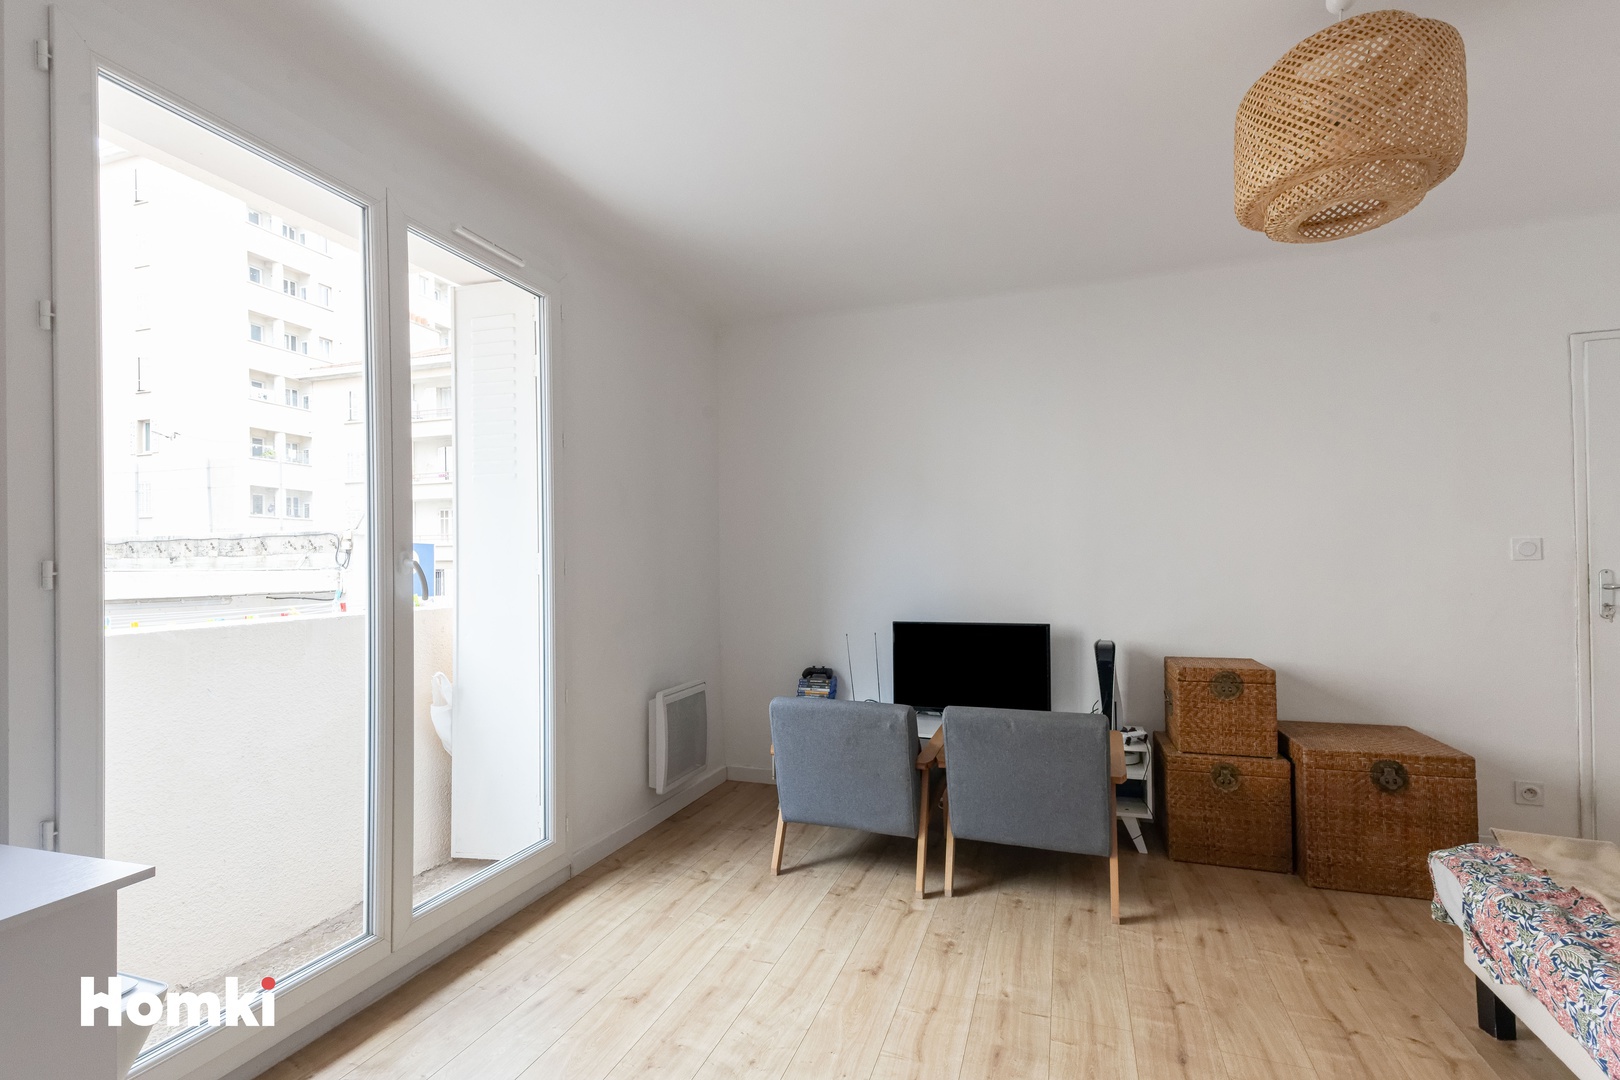 Homki - Vente Appartement  de 44.0 m² à Marseille 13004